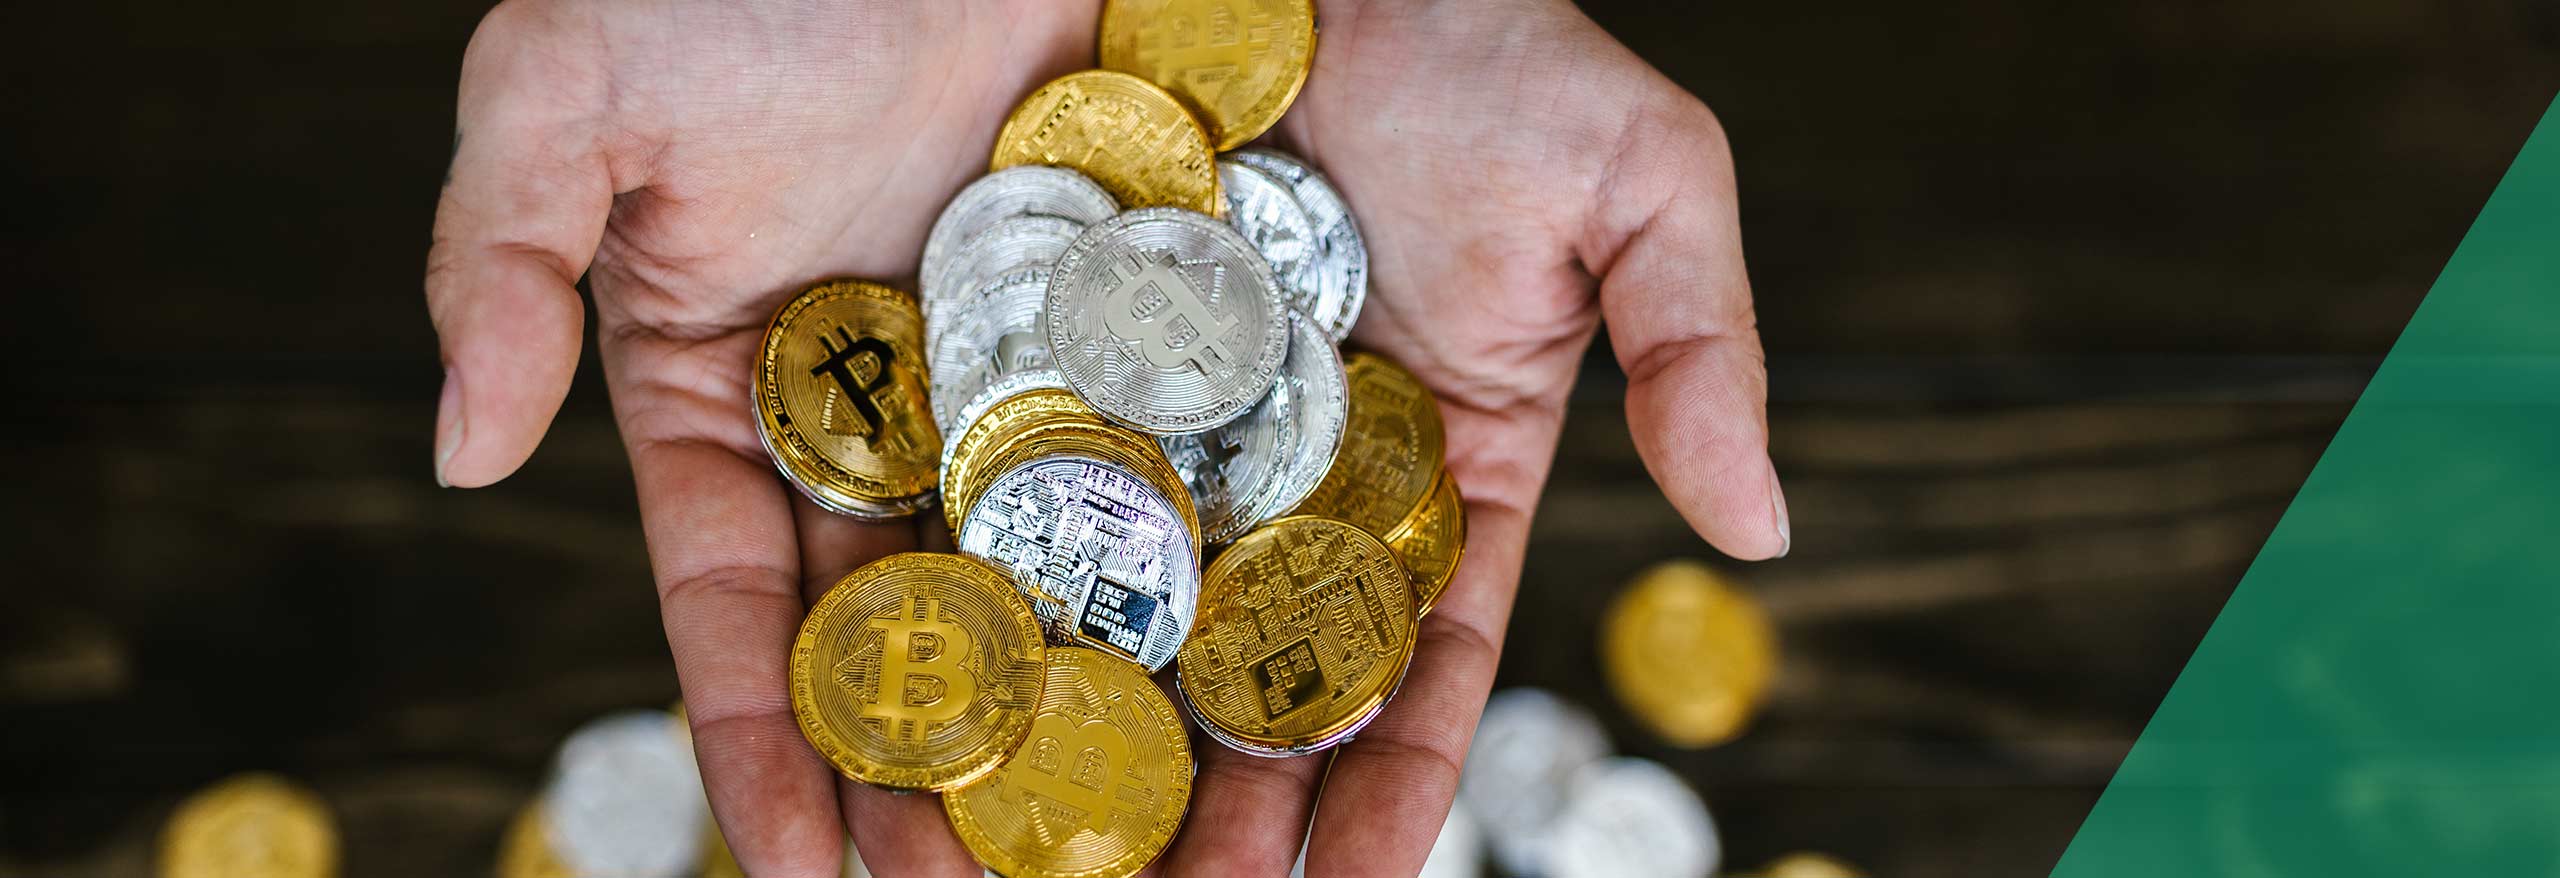 Deux mains débordent de pièces de crypto-monnais, bitcoin, ethereum, blockchain